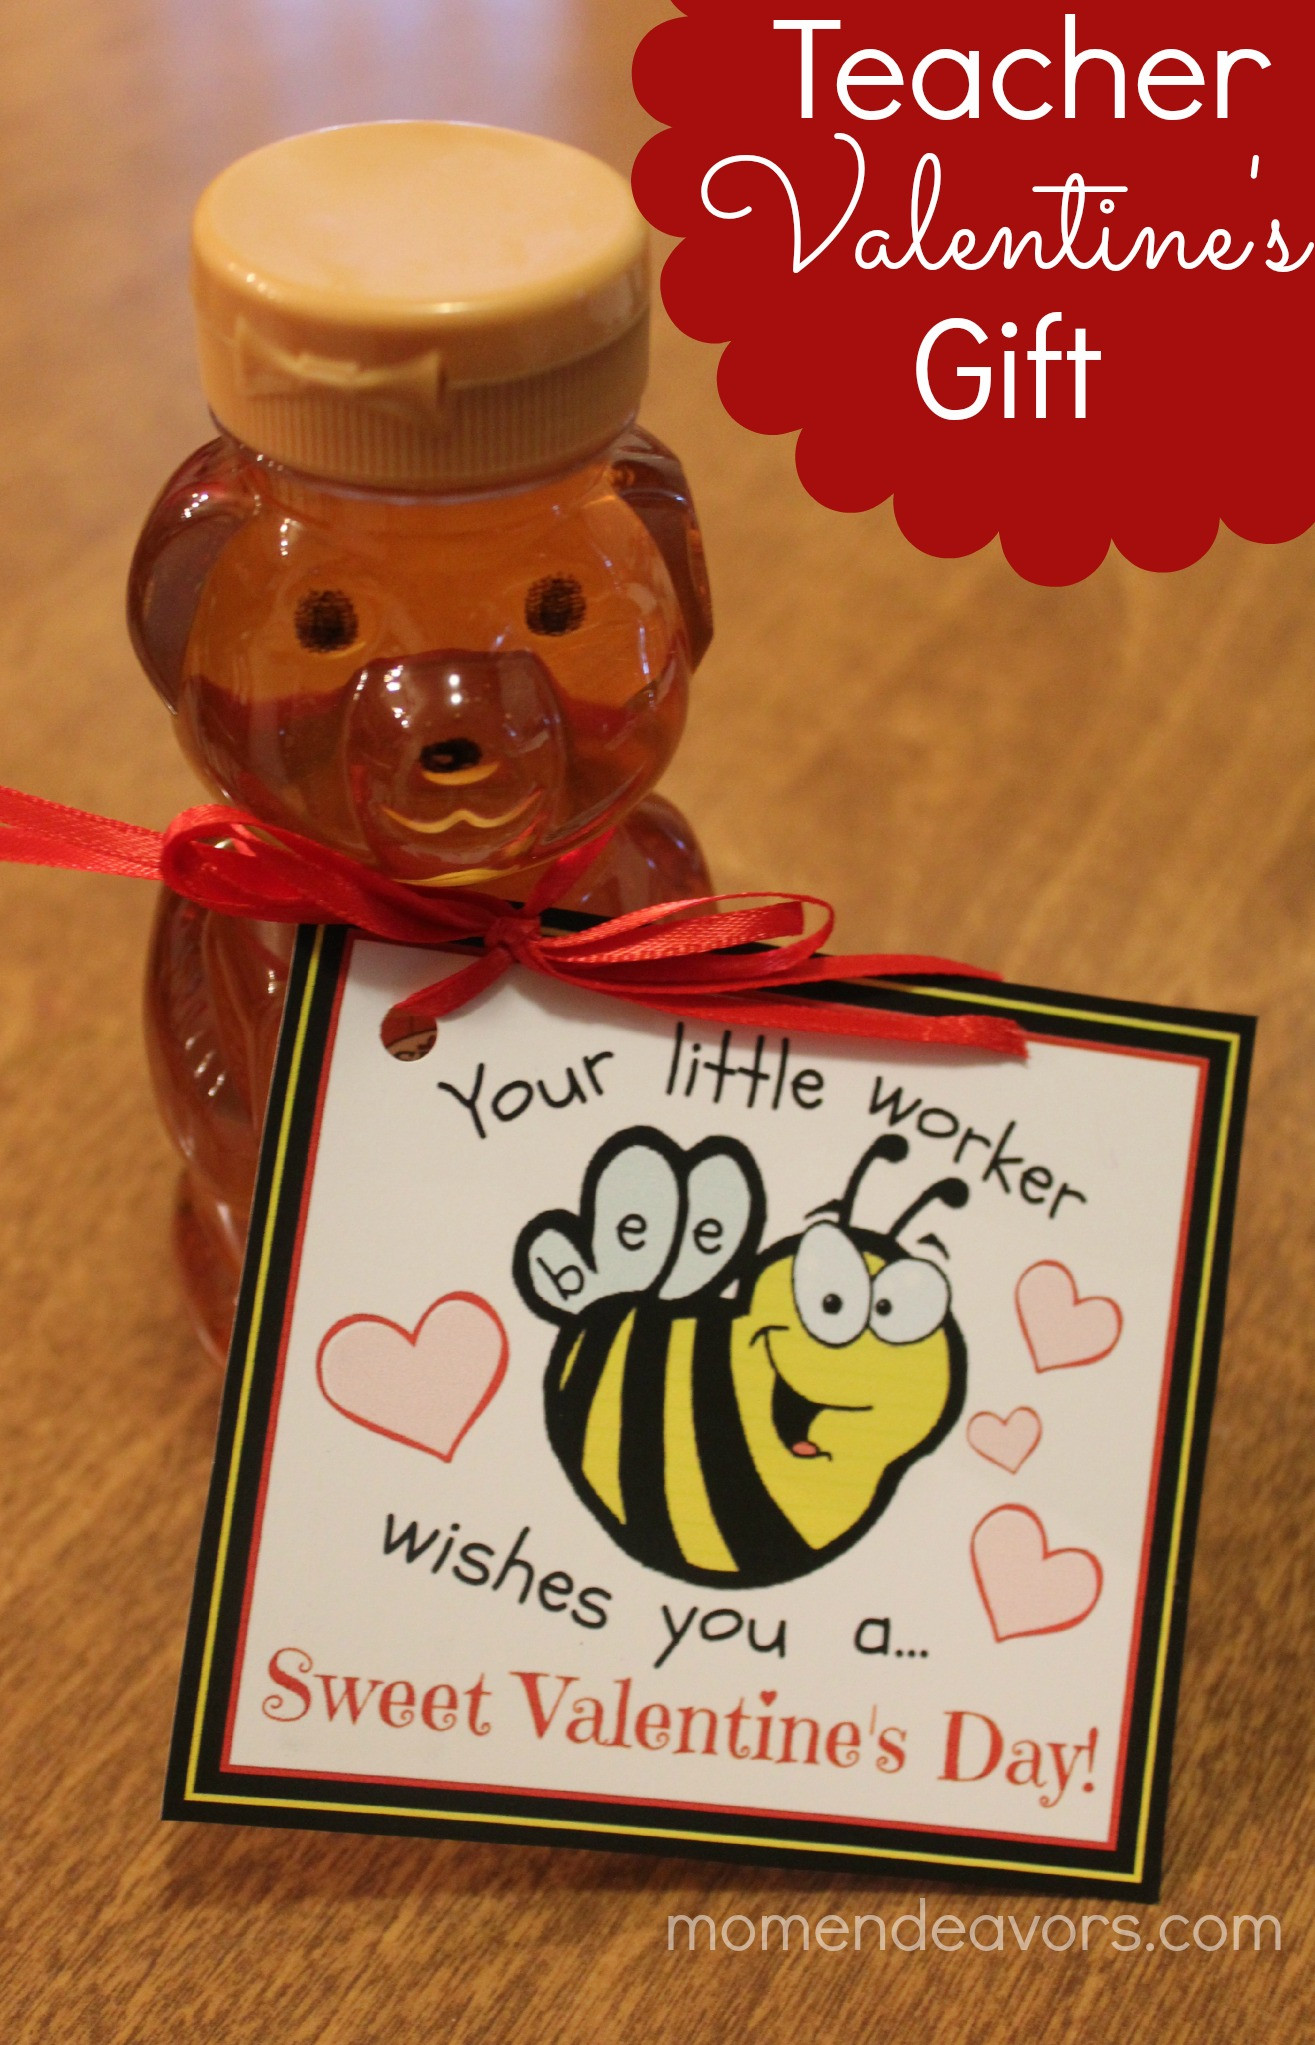 Valentine'S Day Teacher Gift Ideas
 Bee themed Teacher Valentine’s Gift